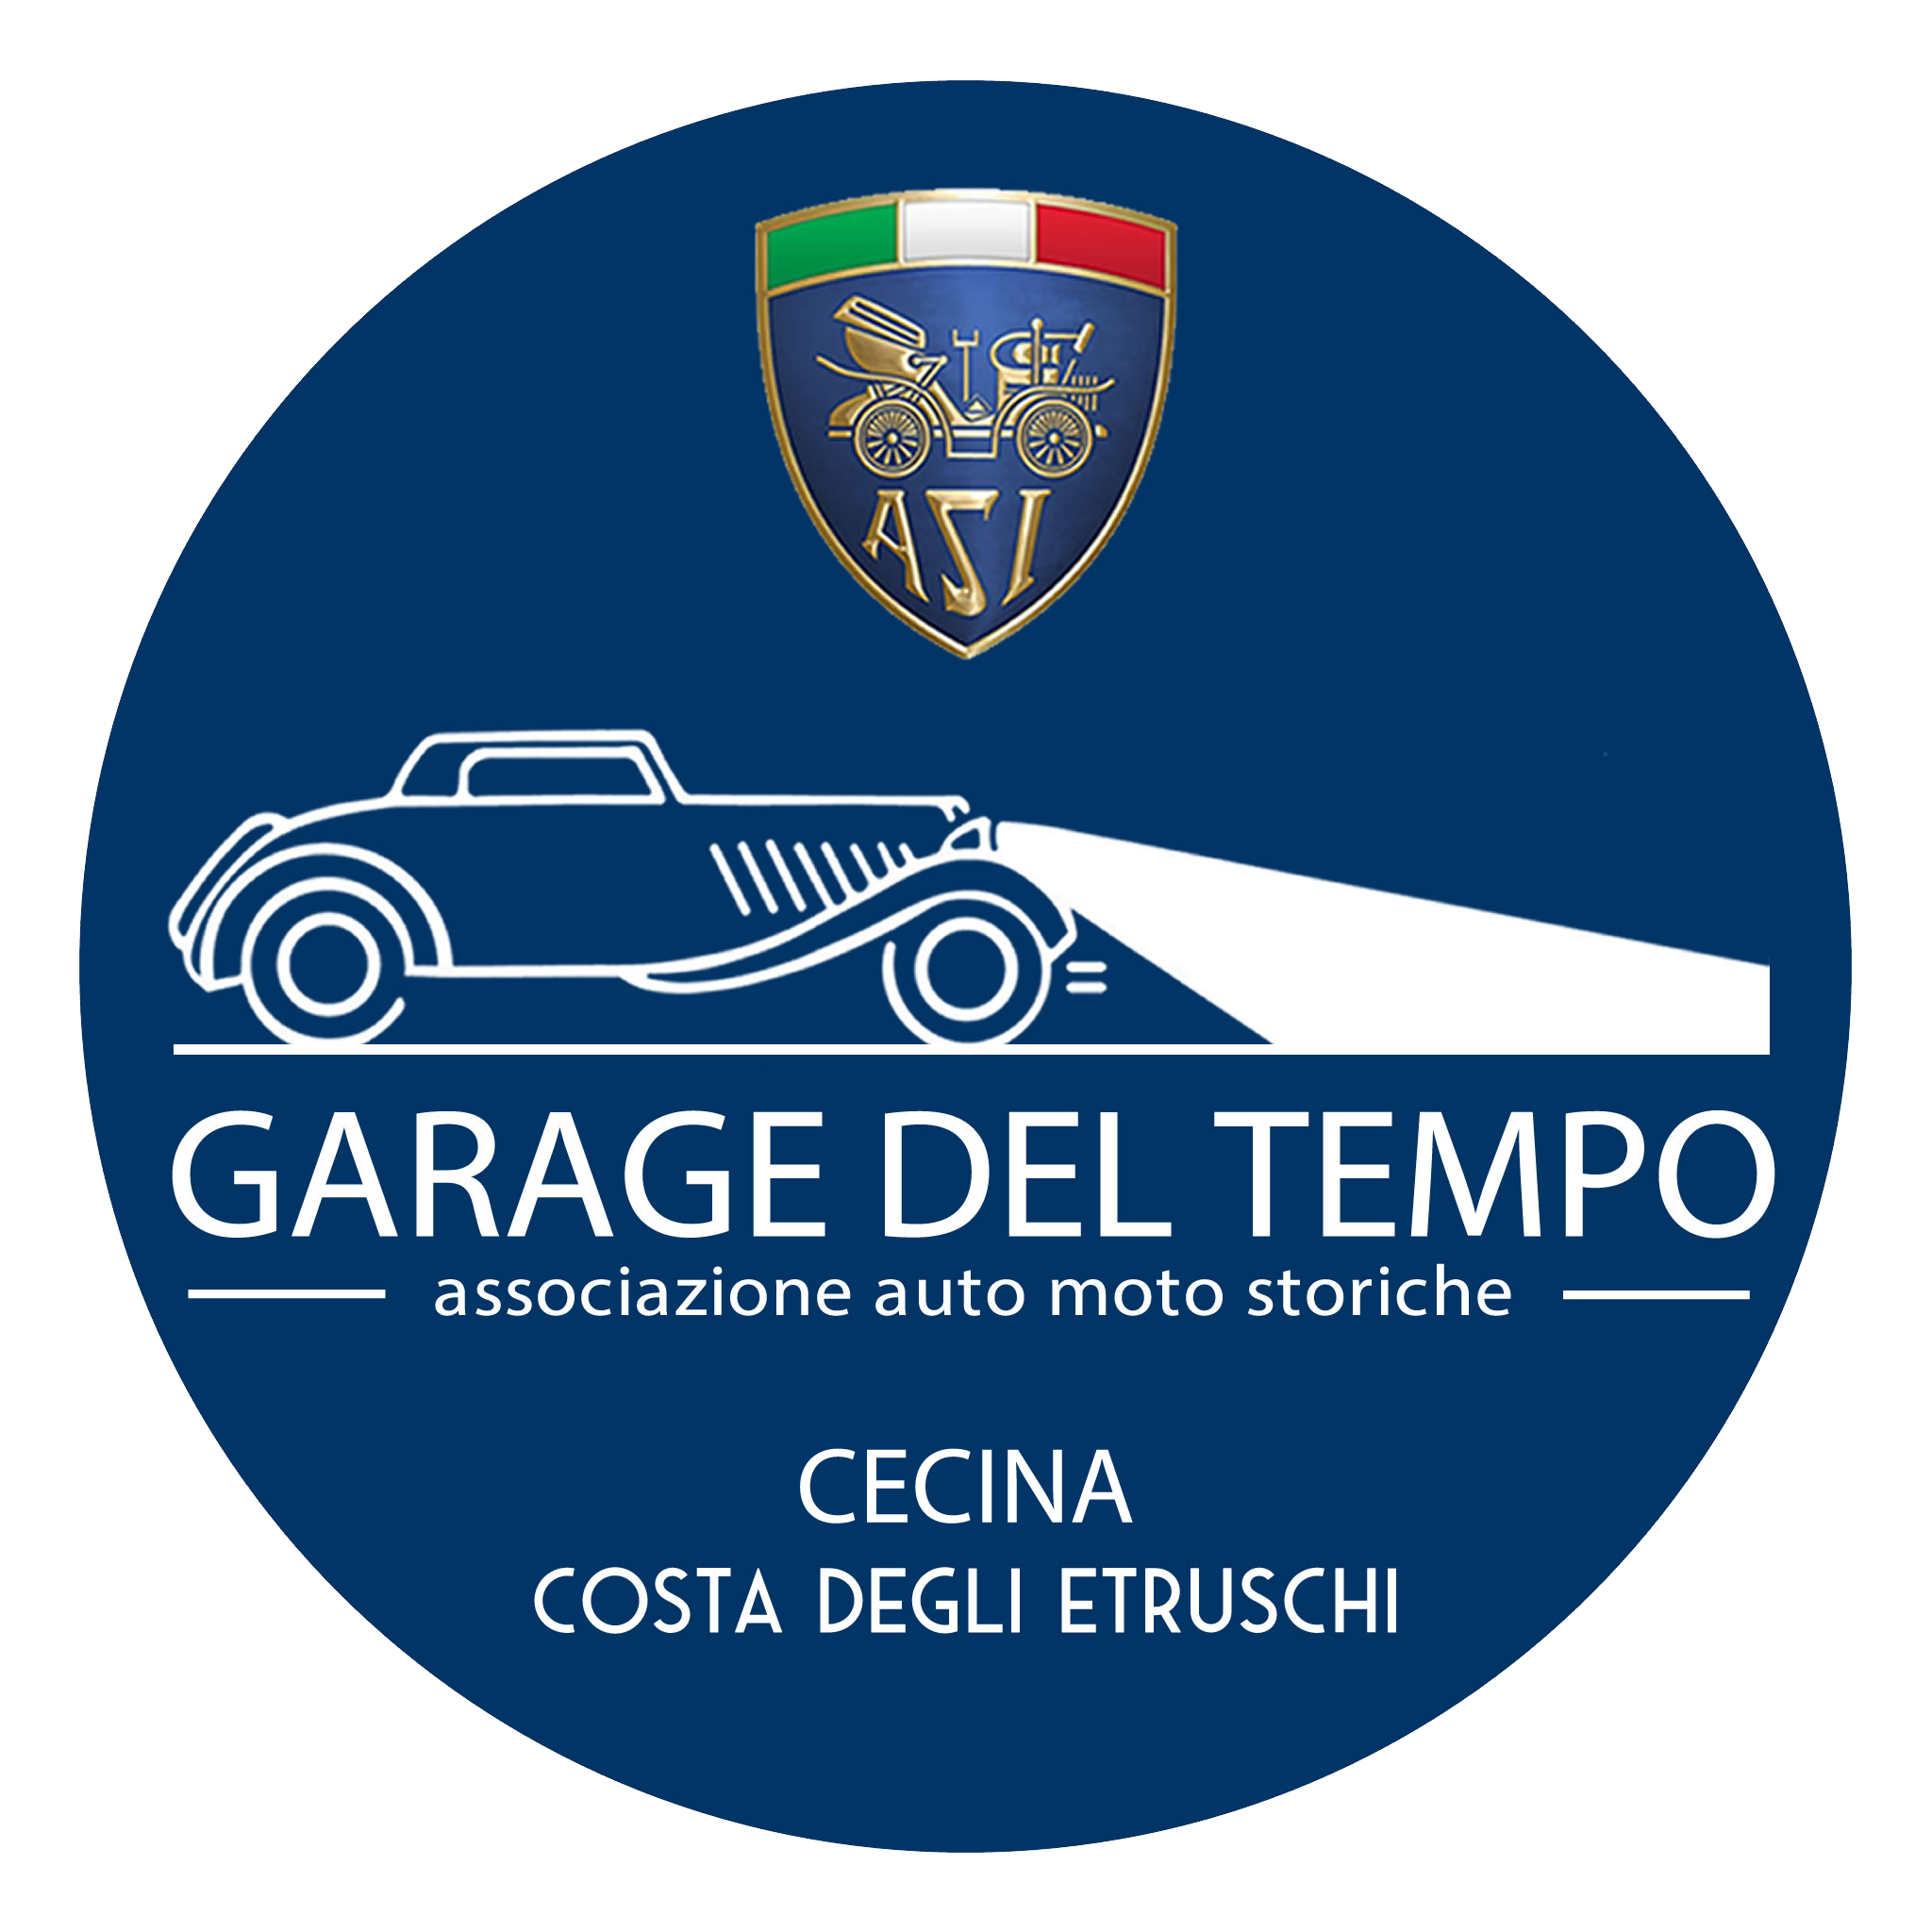 Garage del Tempo - Associazione Auto Moto Storiche Cecina - Costa degli Etruschi